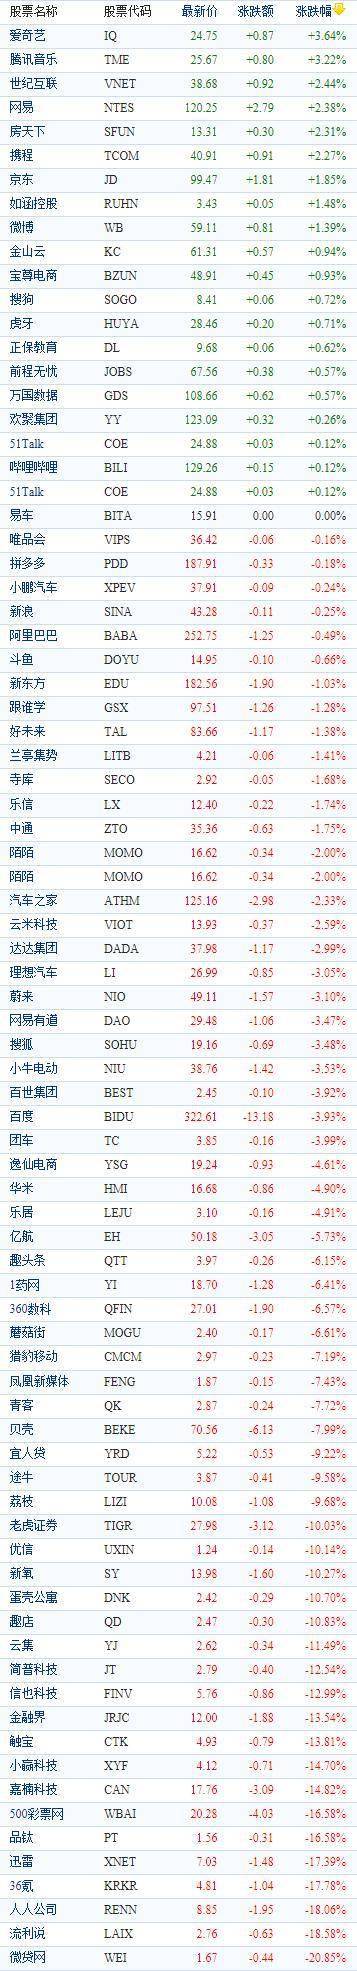 中国概念股周二收盘多数下跌 盘中哔哩哔哩一度跌超10%